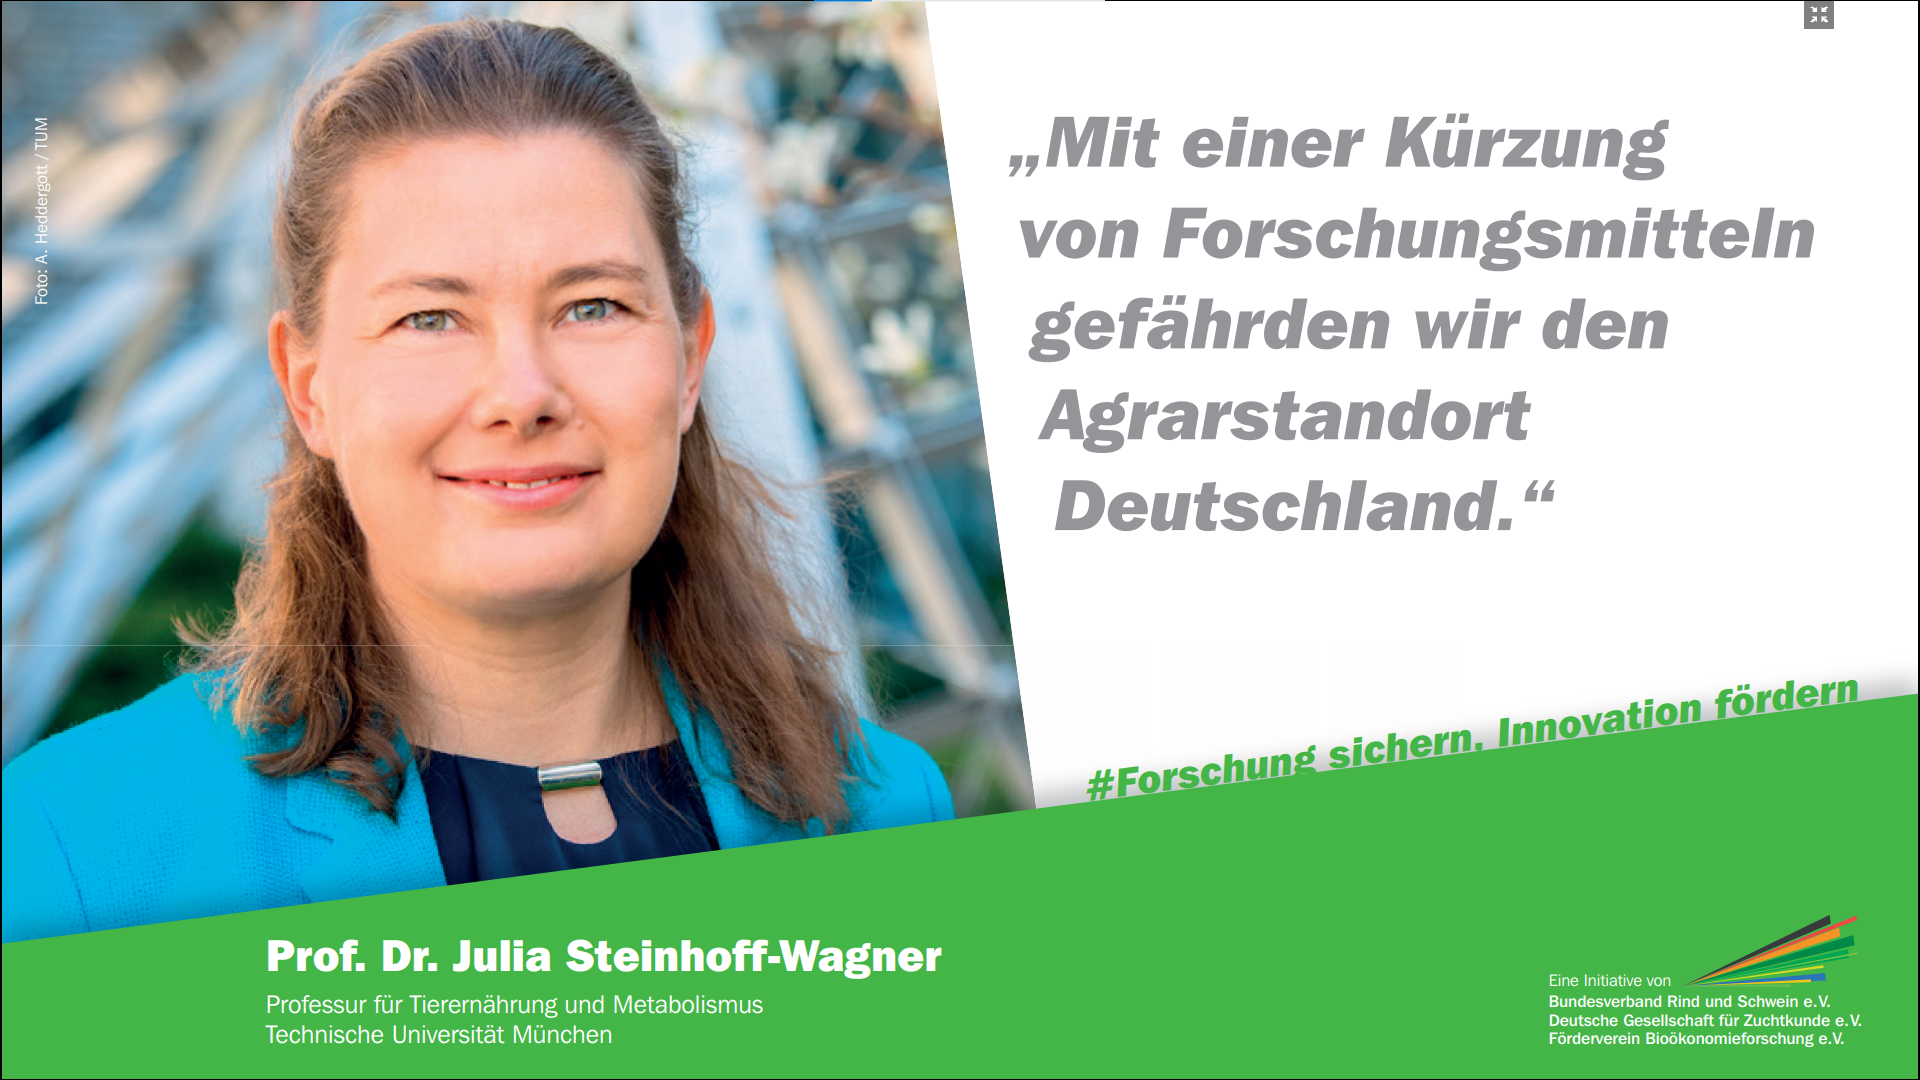 Prof. Prof. Dr. Julia Steinhoff-Wagner, Professur für Tierernährung und Metabolismus | Technische Universität München
© BRS e.V.